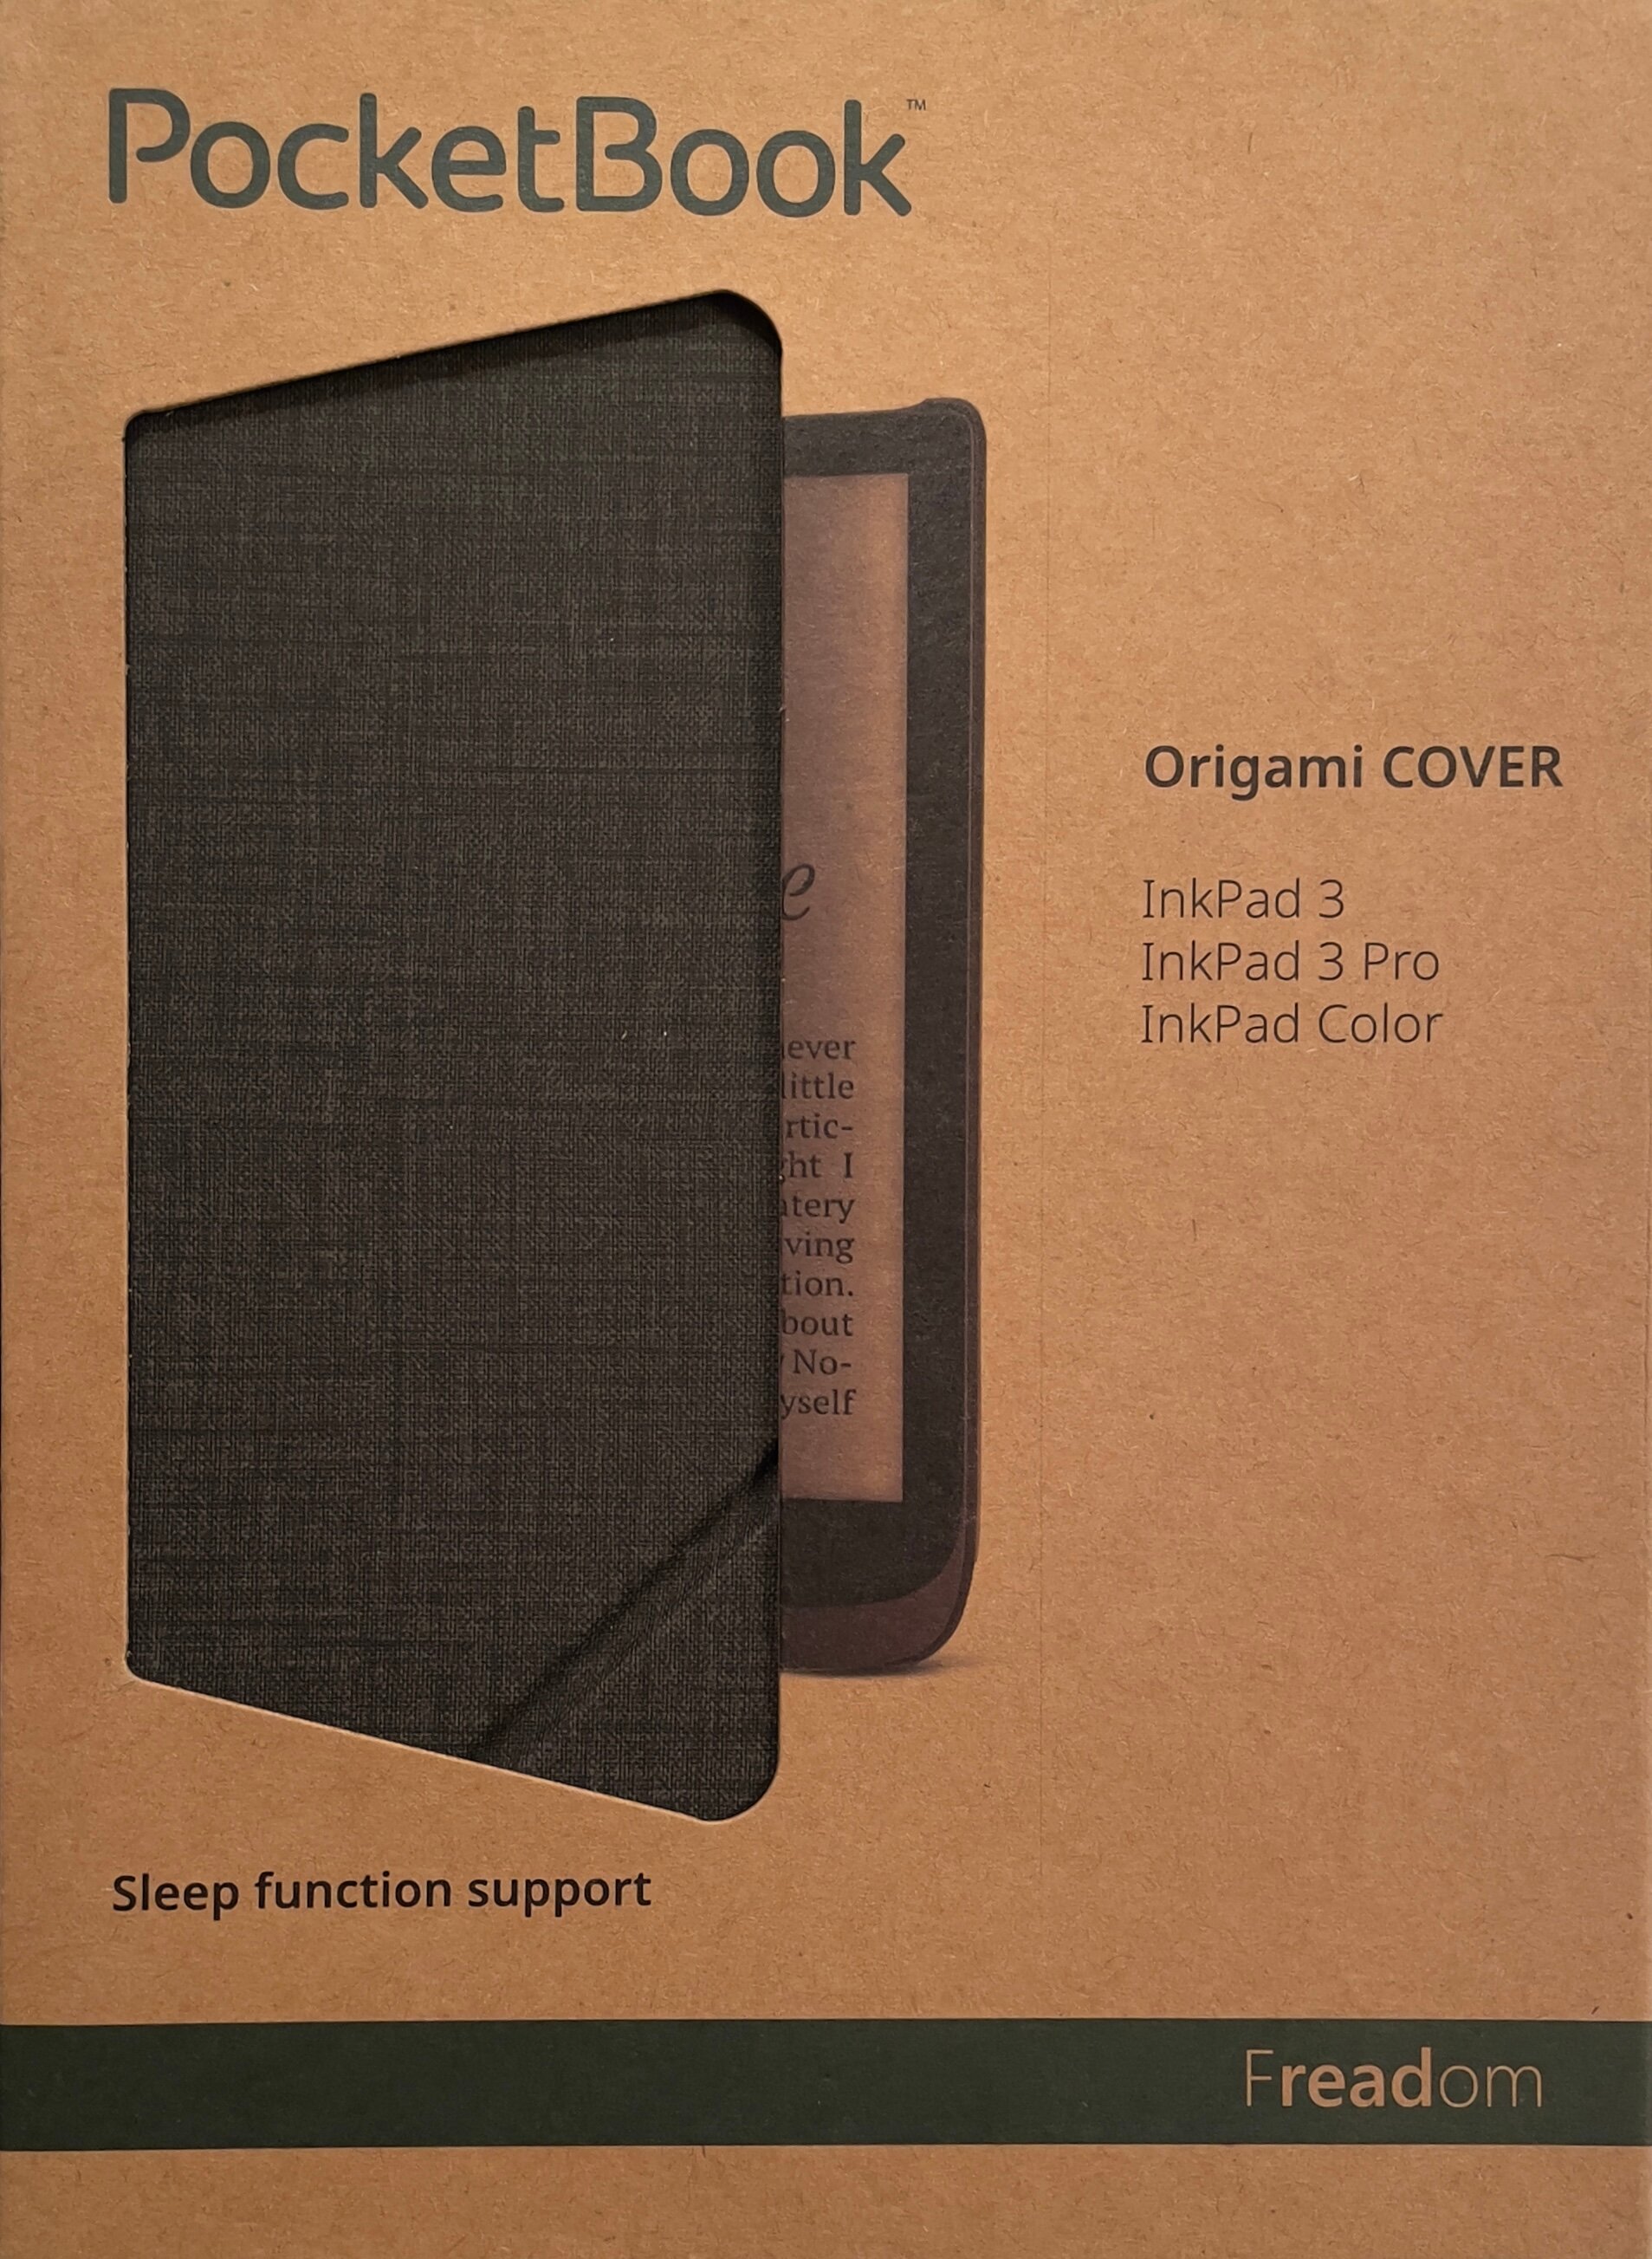 Оригинальная обложка-трансформер для PocketBook 740 Ink Pad 3/740 Pro InkPad 3 Pro (HN-SLO-PU-740-DG-WW) Origami темно-серый